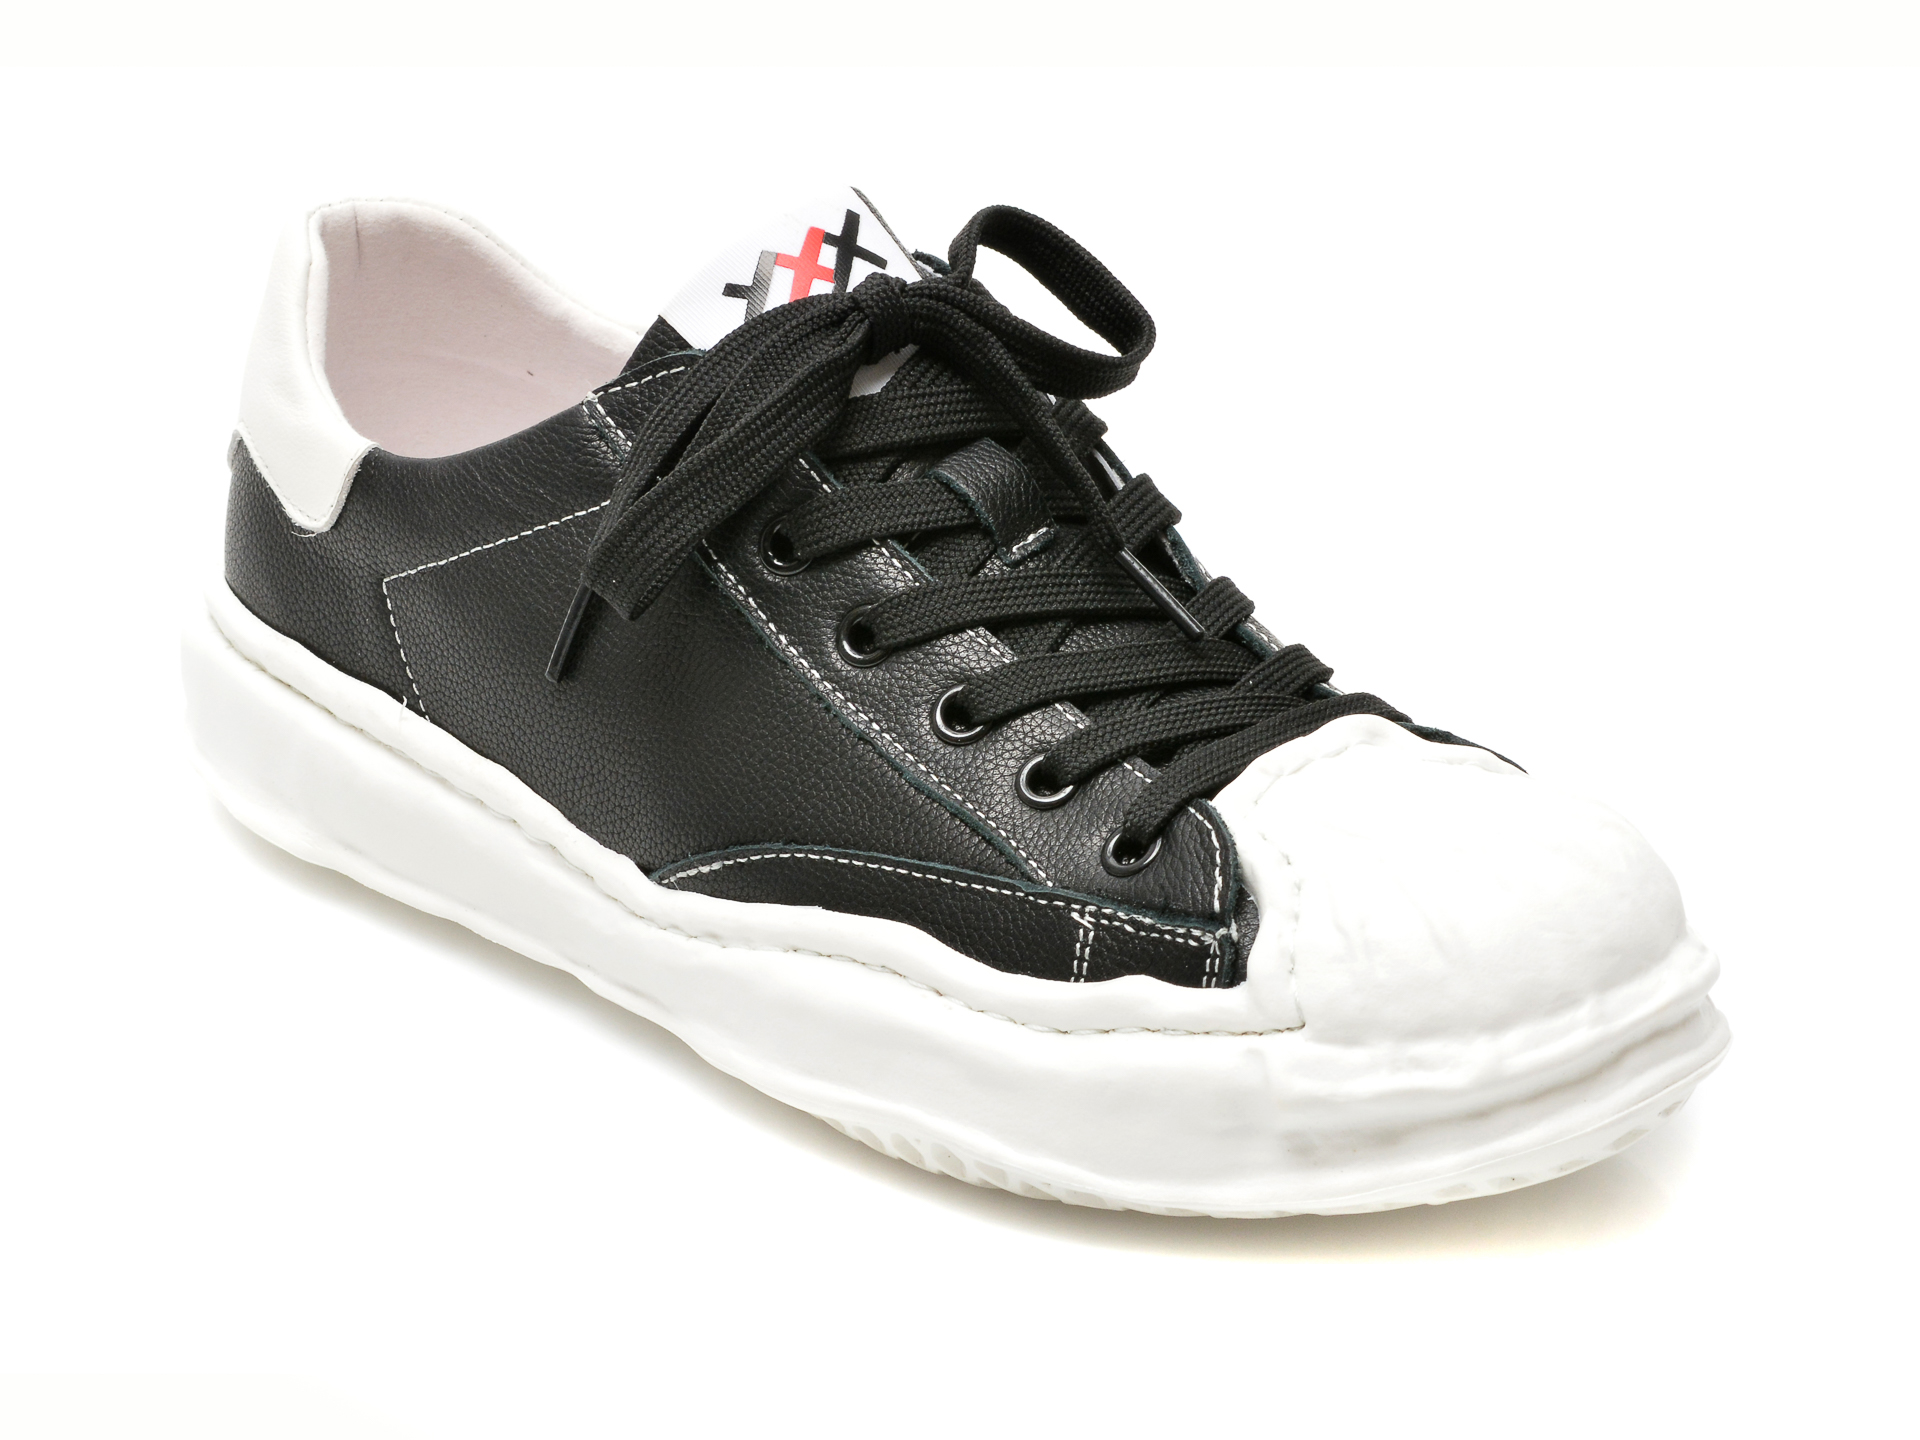 Pantofi sport GRYXX negri, 7028, din piele naturala Gryxx imagine 2022 13clothing.ro